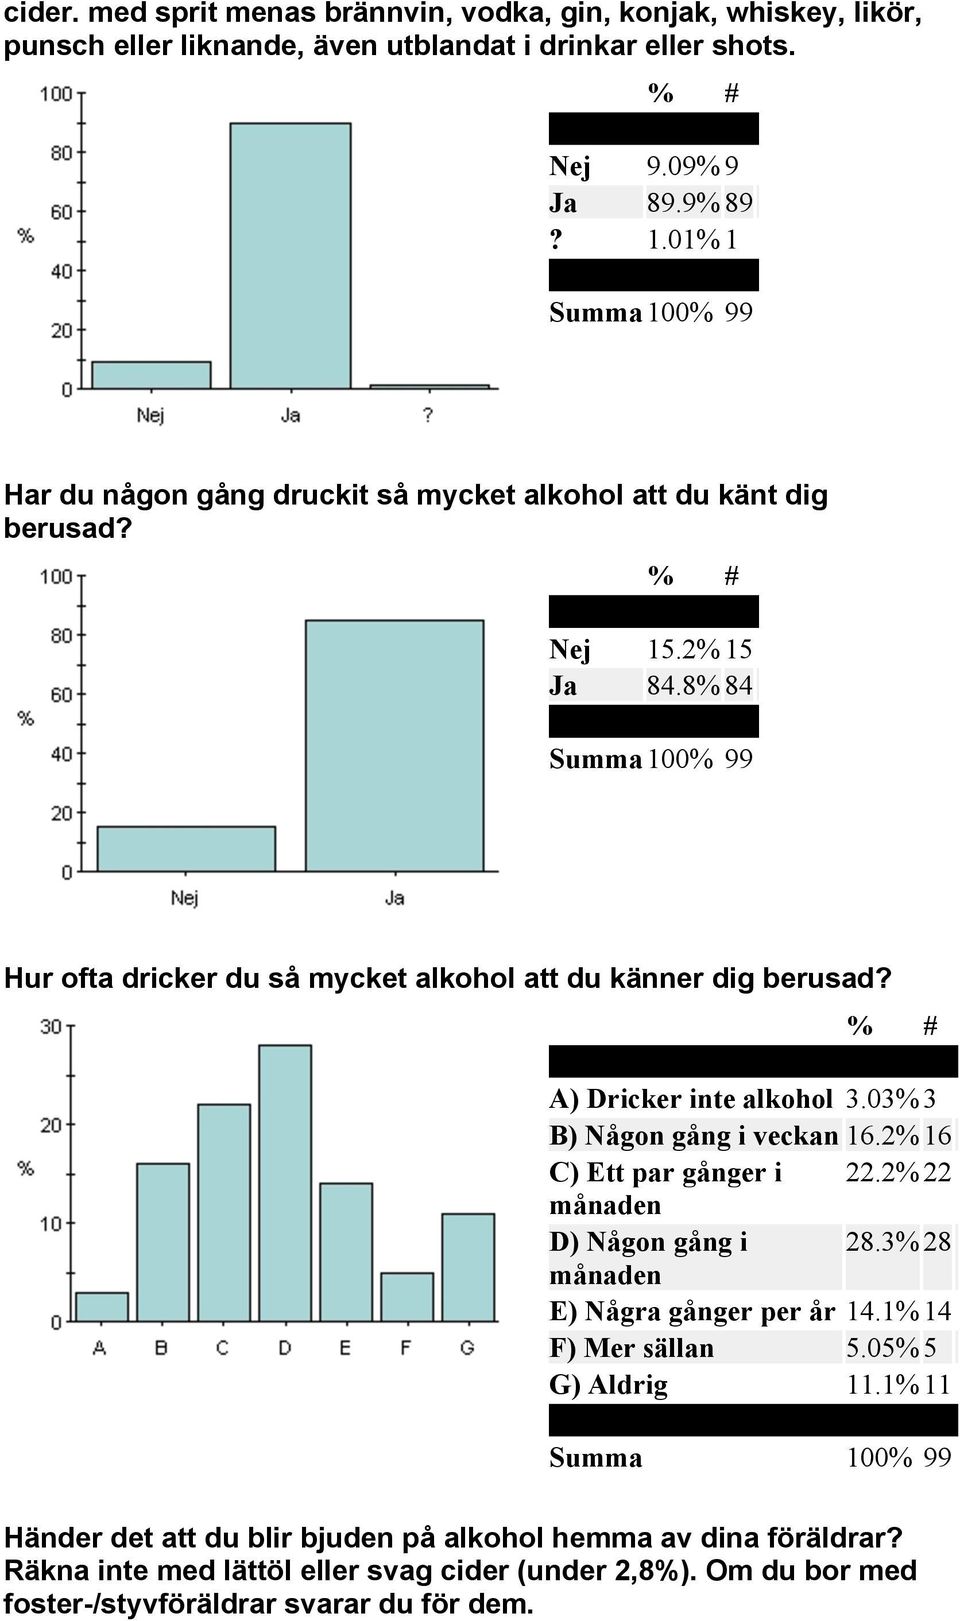 A) Dricker inte alkohol 3.03% 3 B) Någon gång i veckan 16.2% 16 C) Ett par gånger i 22.2% 22 månaden D) Någon gång i 28.3% 28 månaden E) Några gånger per år 14.